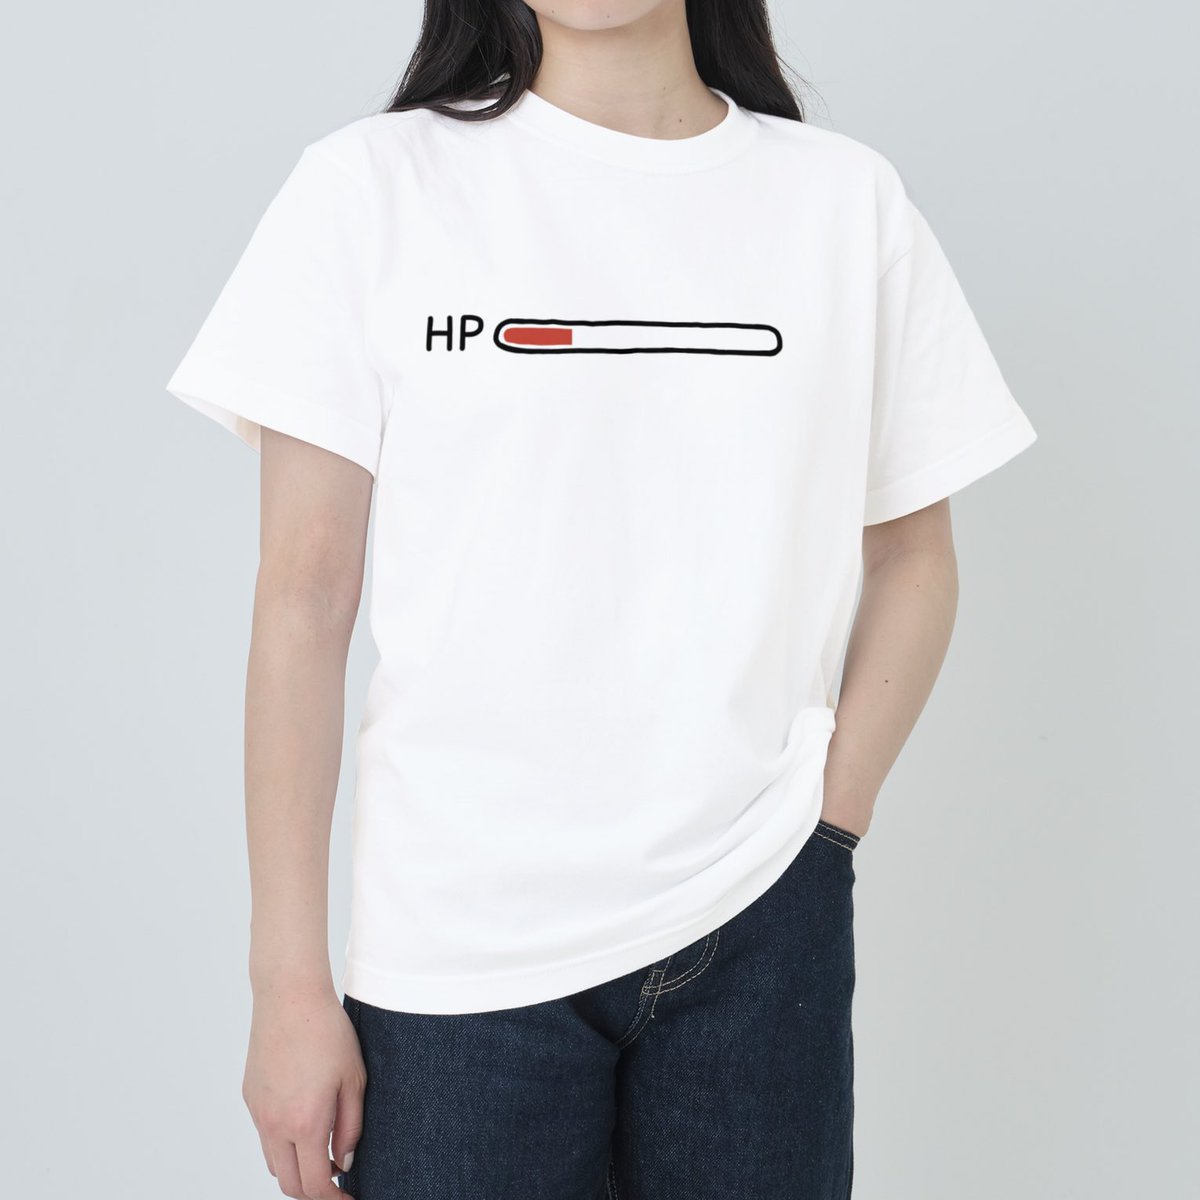 「HPバーが見えるTシャツつくったよ〜  残りHPをアピールして、回復してもらった」|やばこ🐤COMITIA144【E29ab】のイラスト